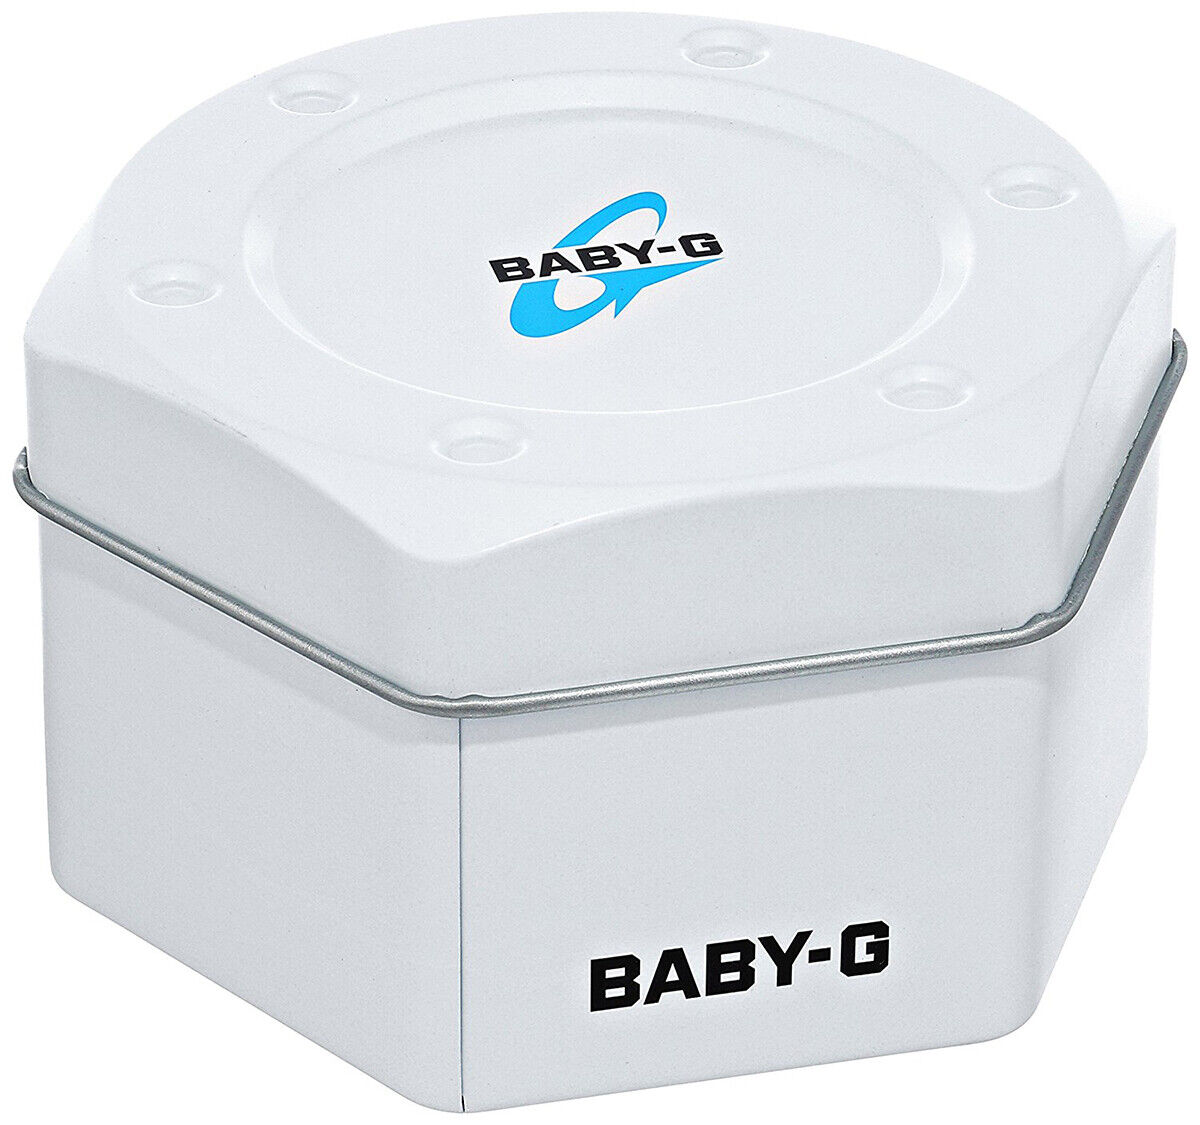 Casio Baby-G BA-110X-7A1